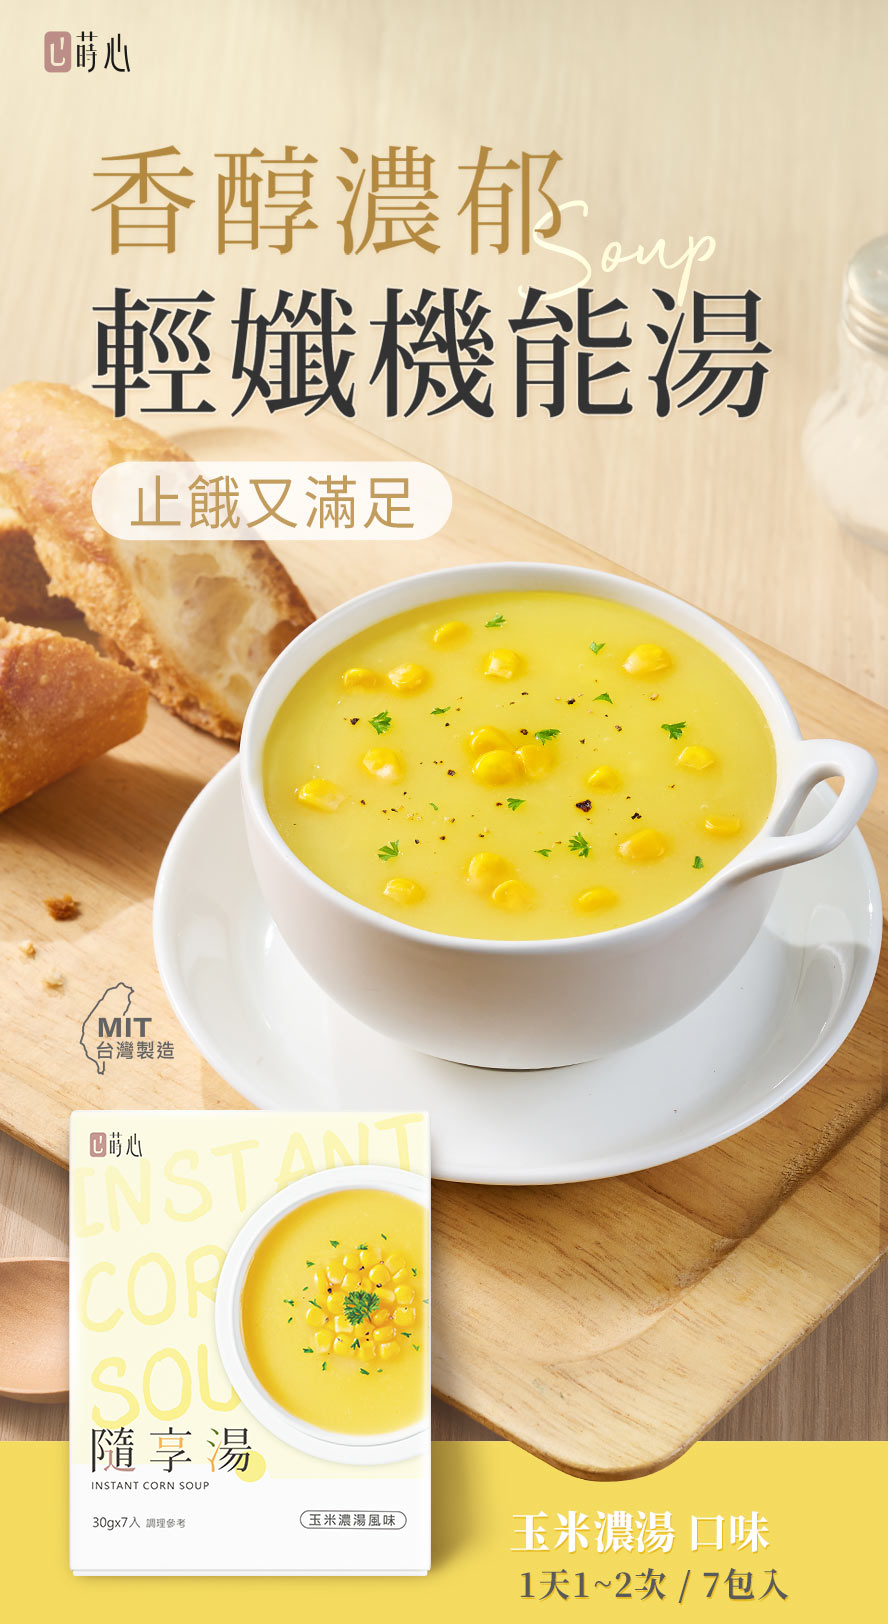 蒔心隨享湯玉米濃湯口味介紹。